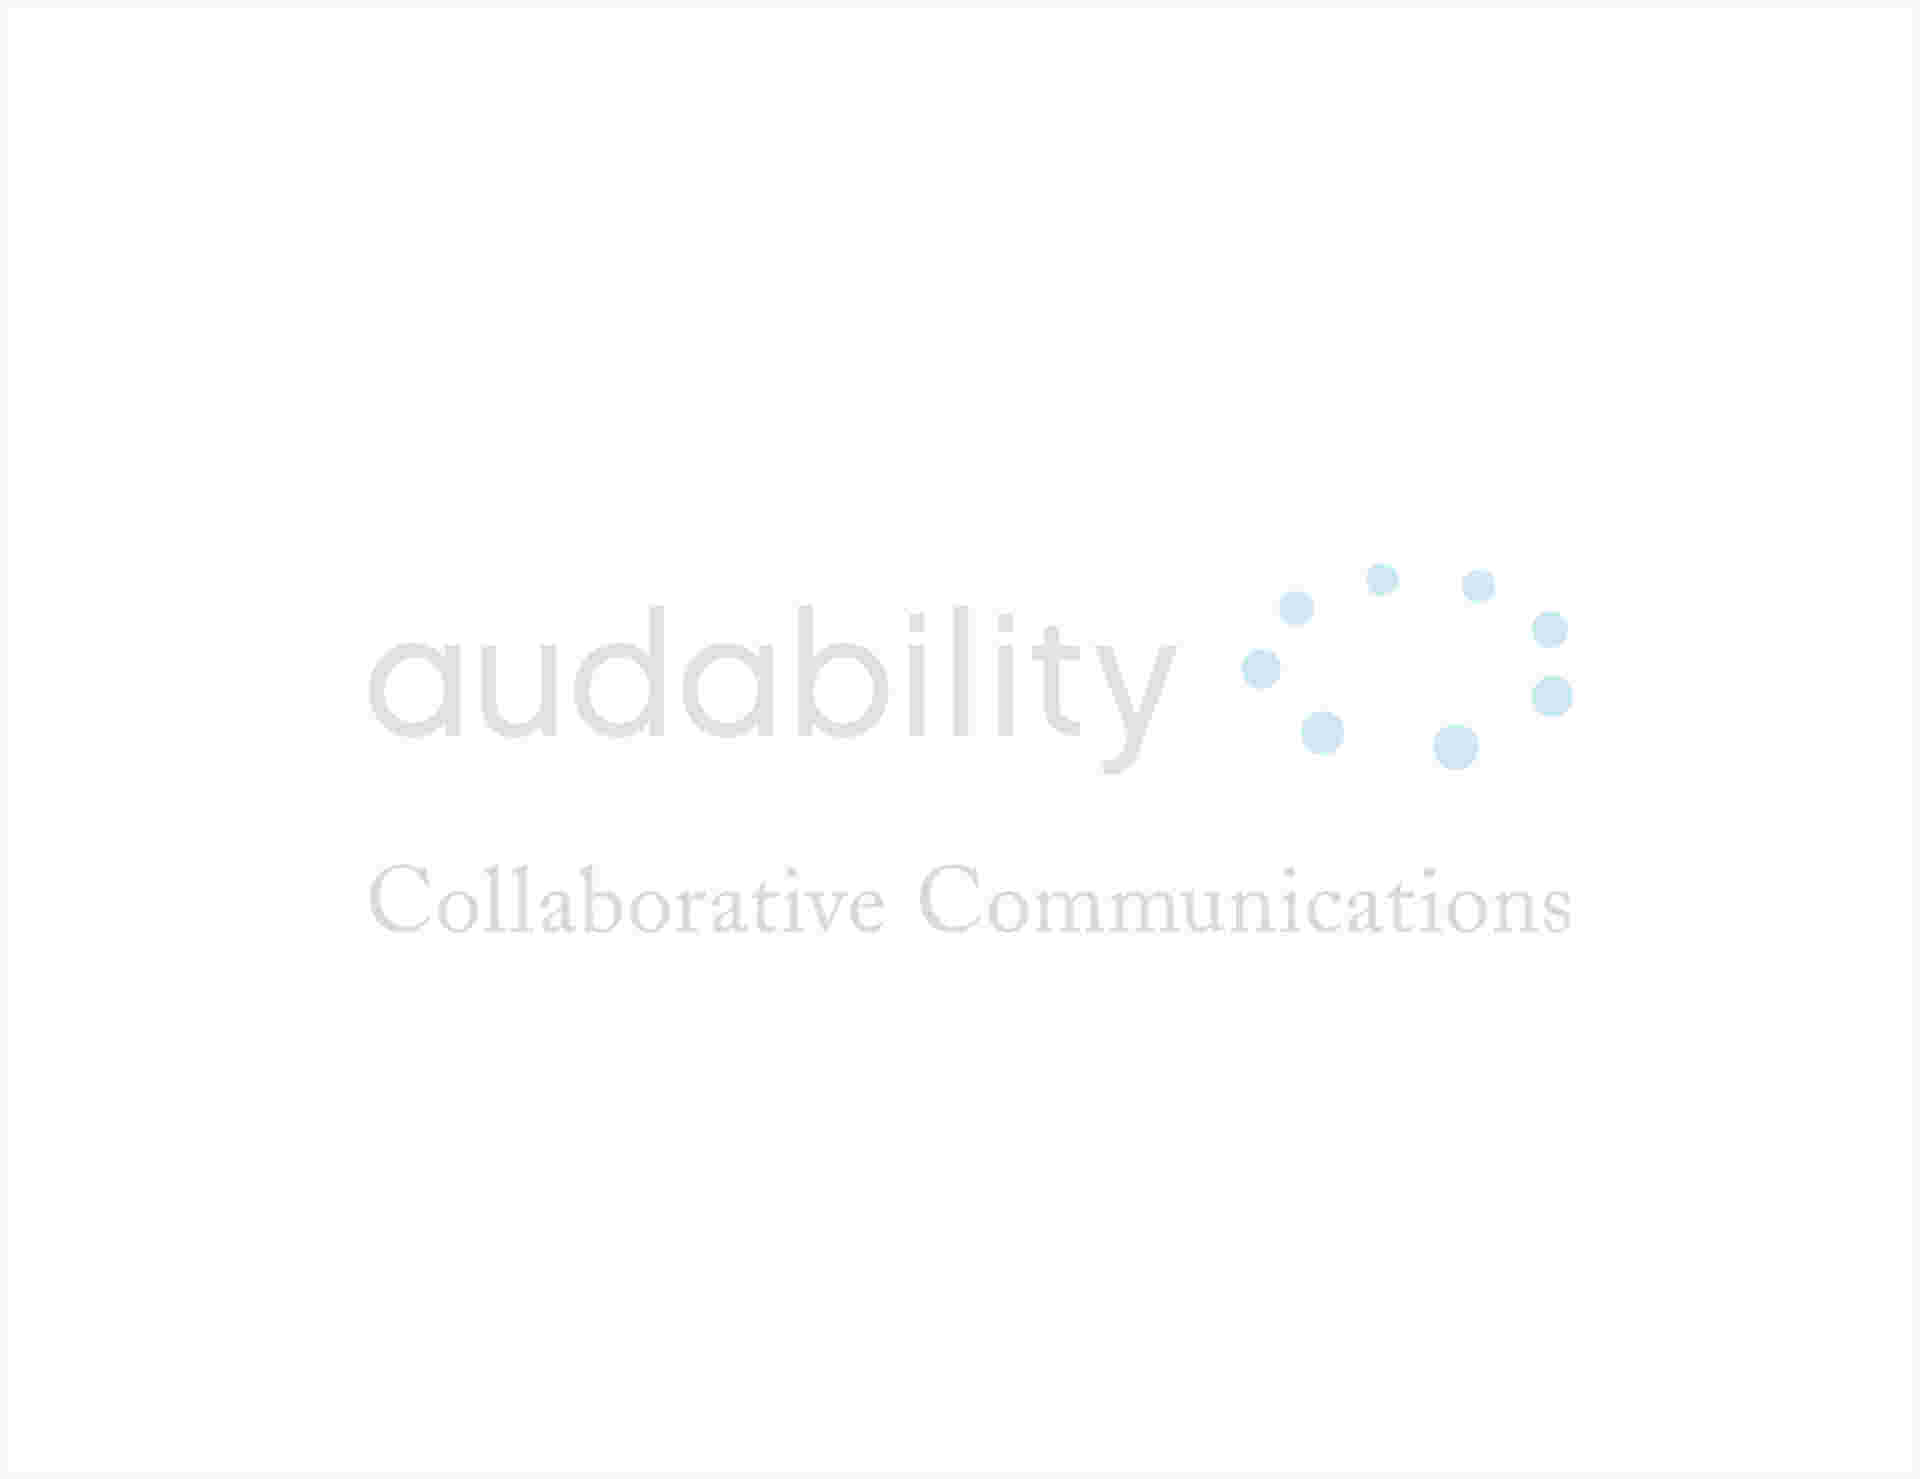 Audability - Audability-1_1